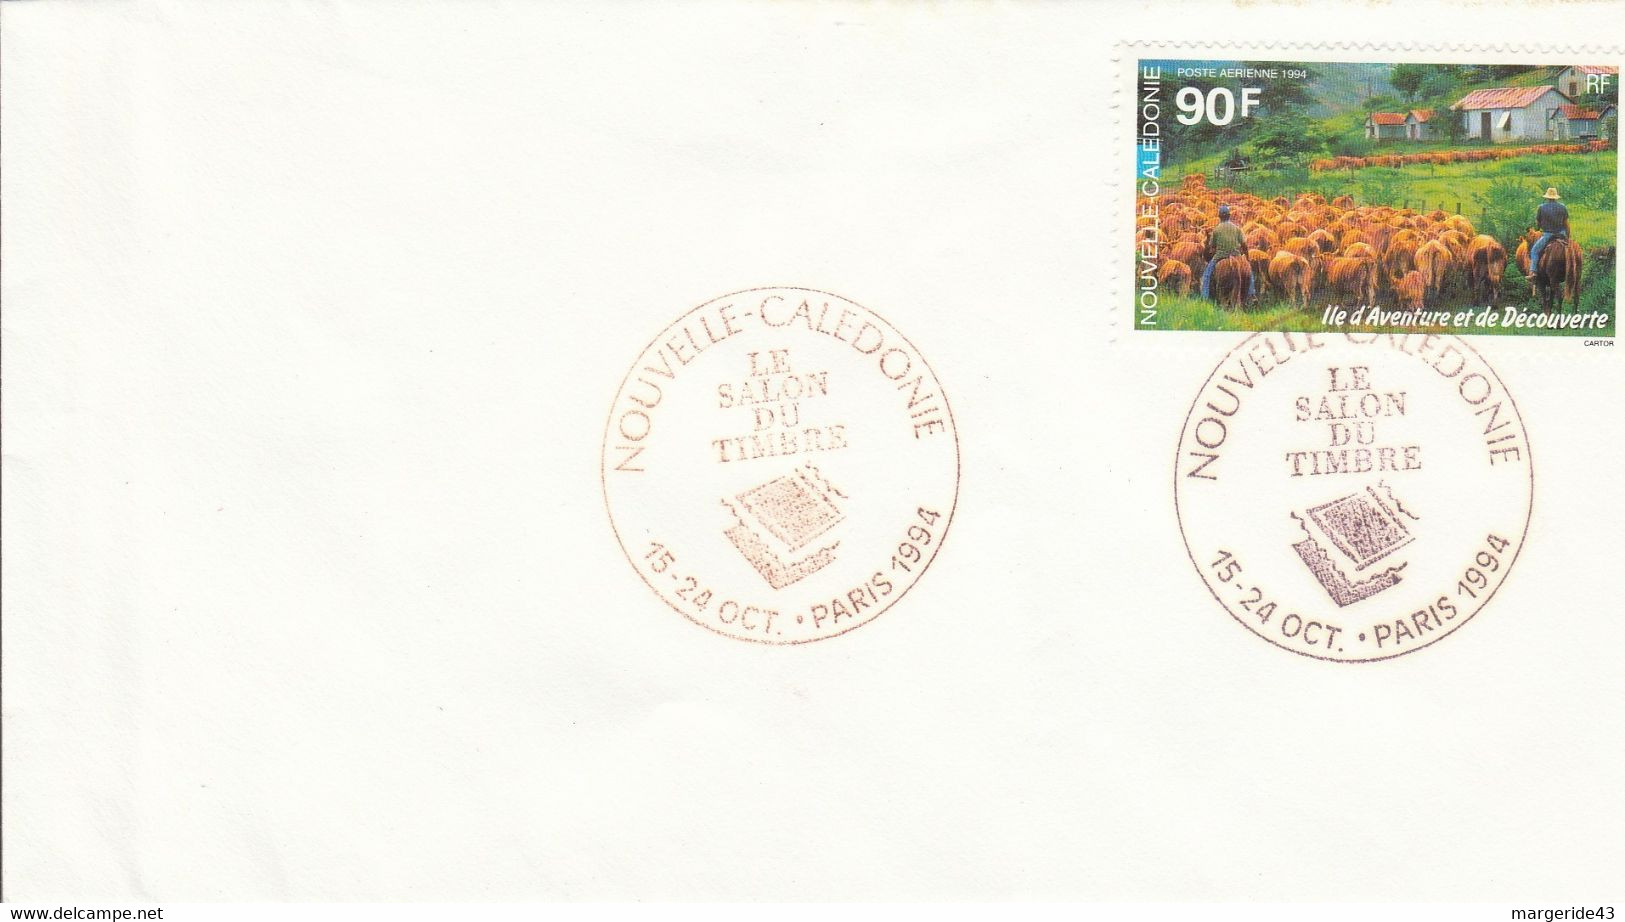 NOUVELLE CALEDONIE PRESENTE AU SALON DU TIMBRE PARIS 1994 - Covers & Documents